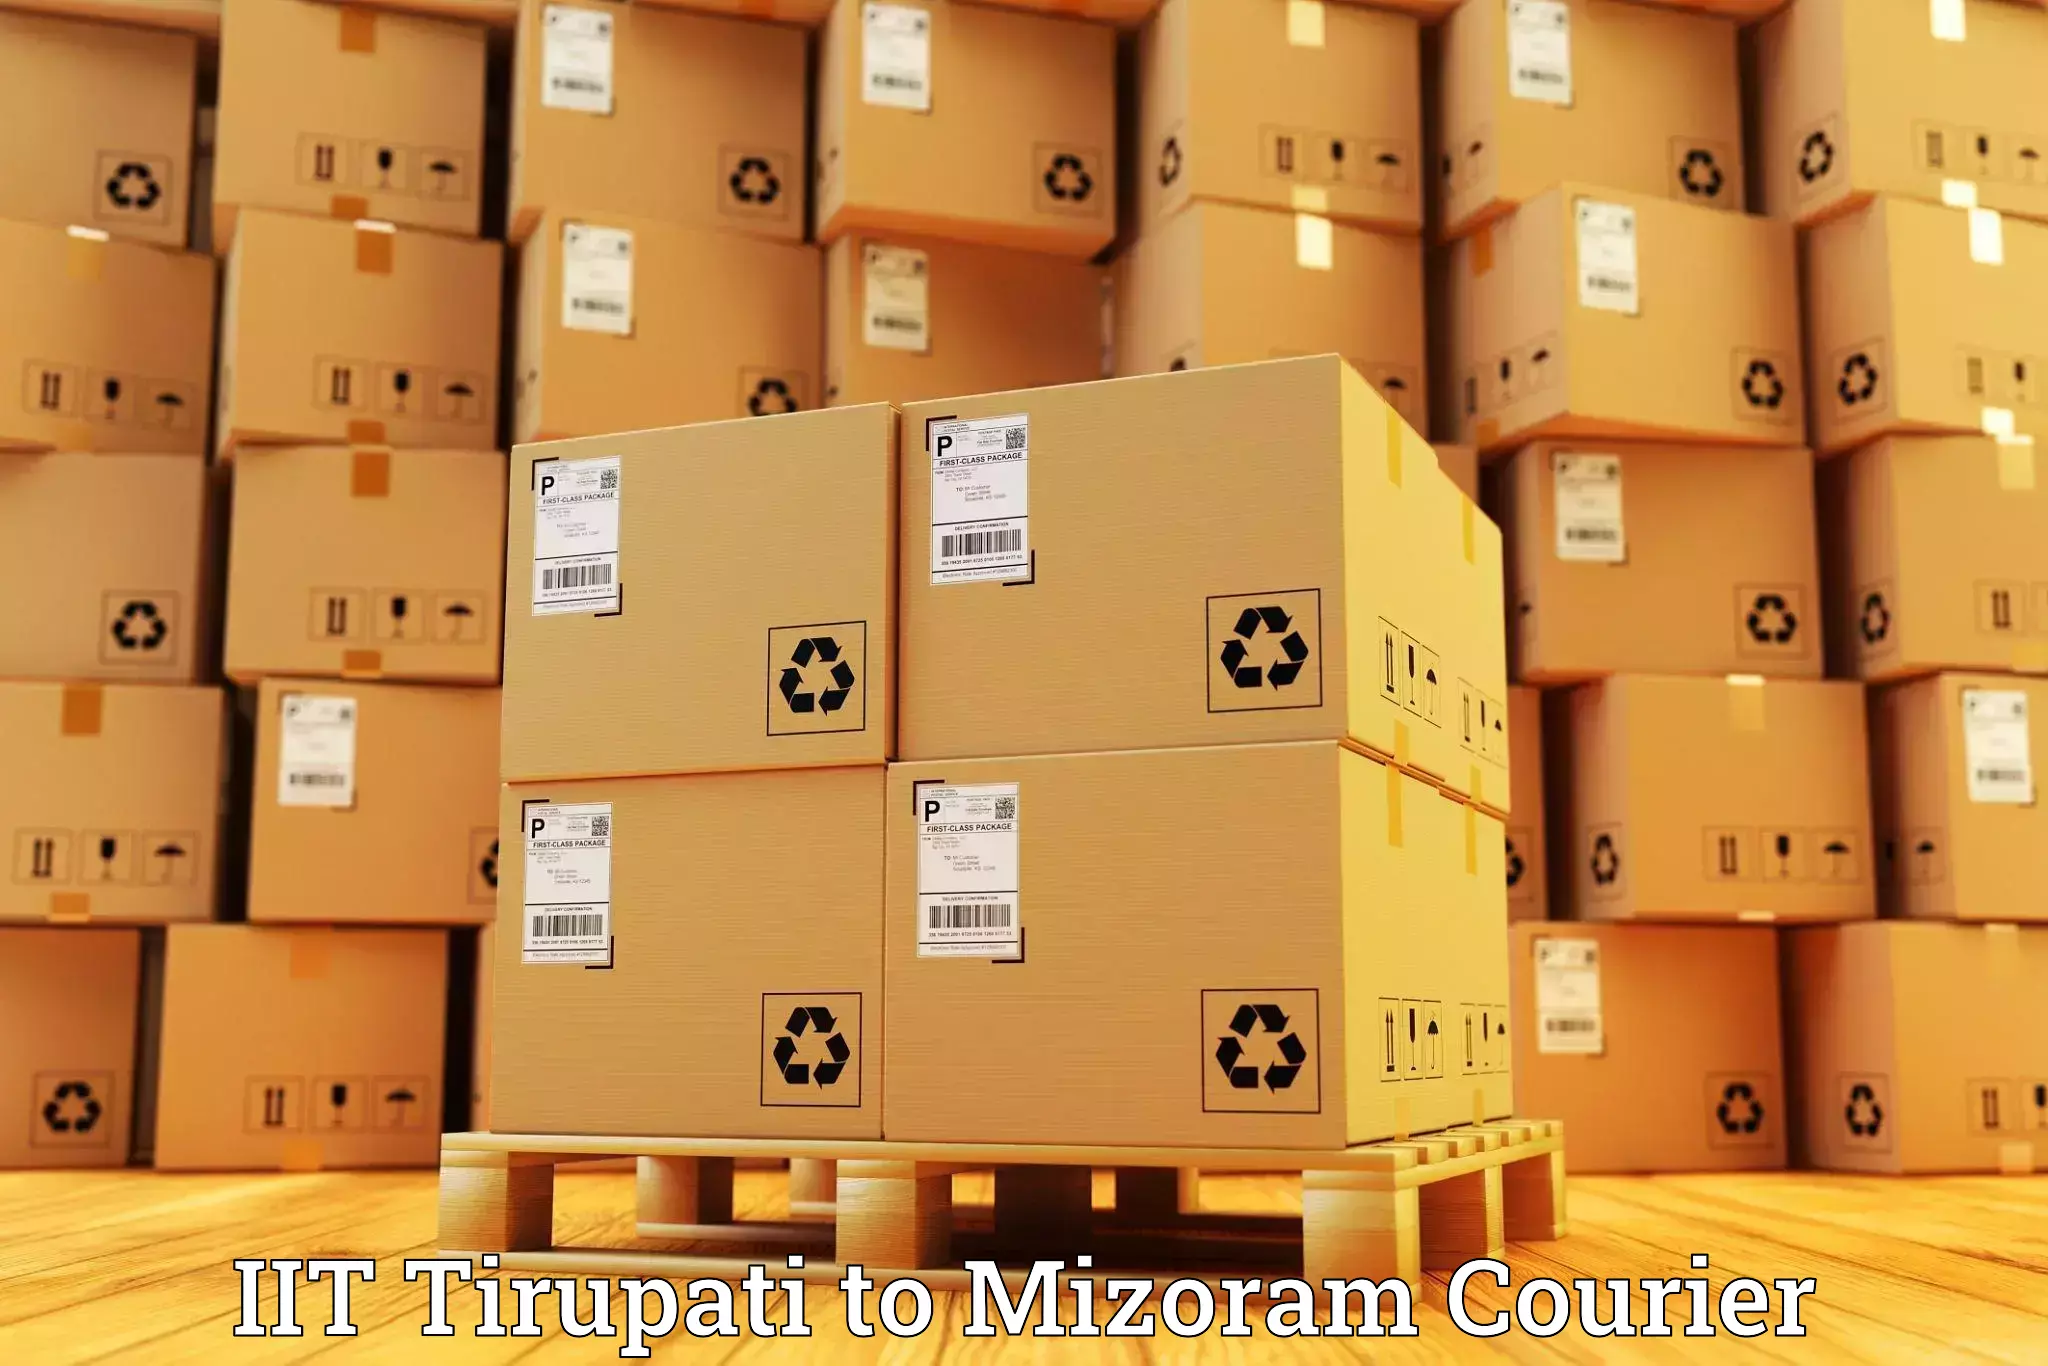 Cost-effective courier solutions IIT Tirupati to Mizoram